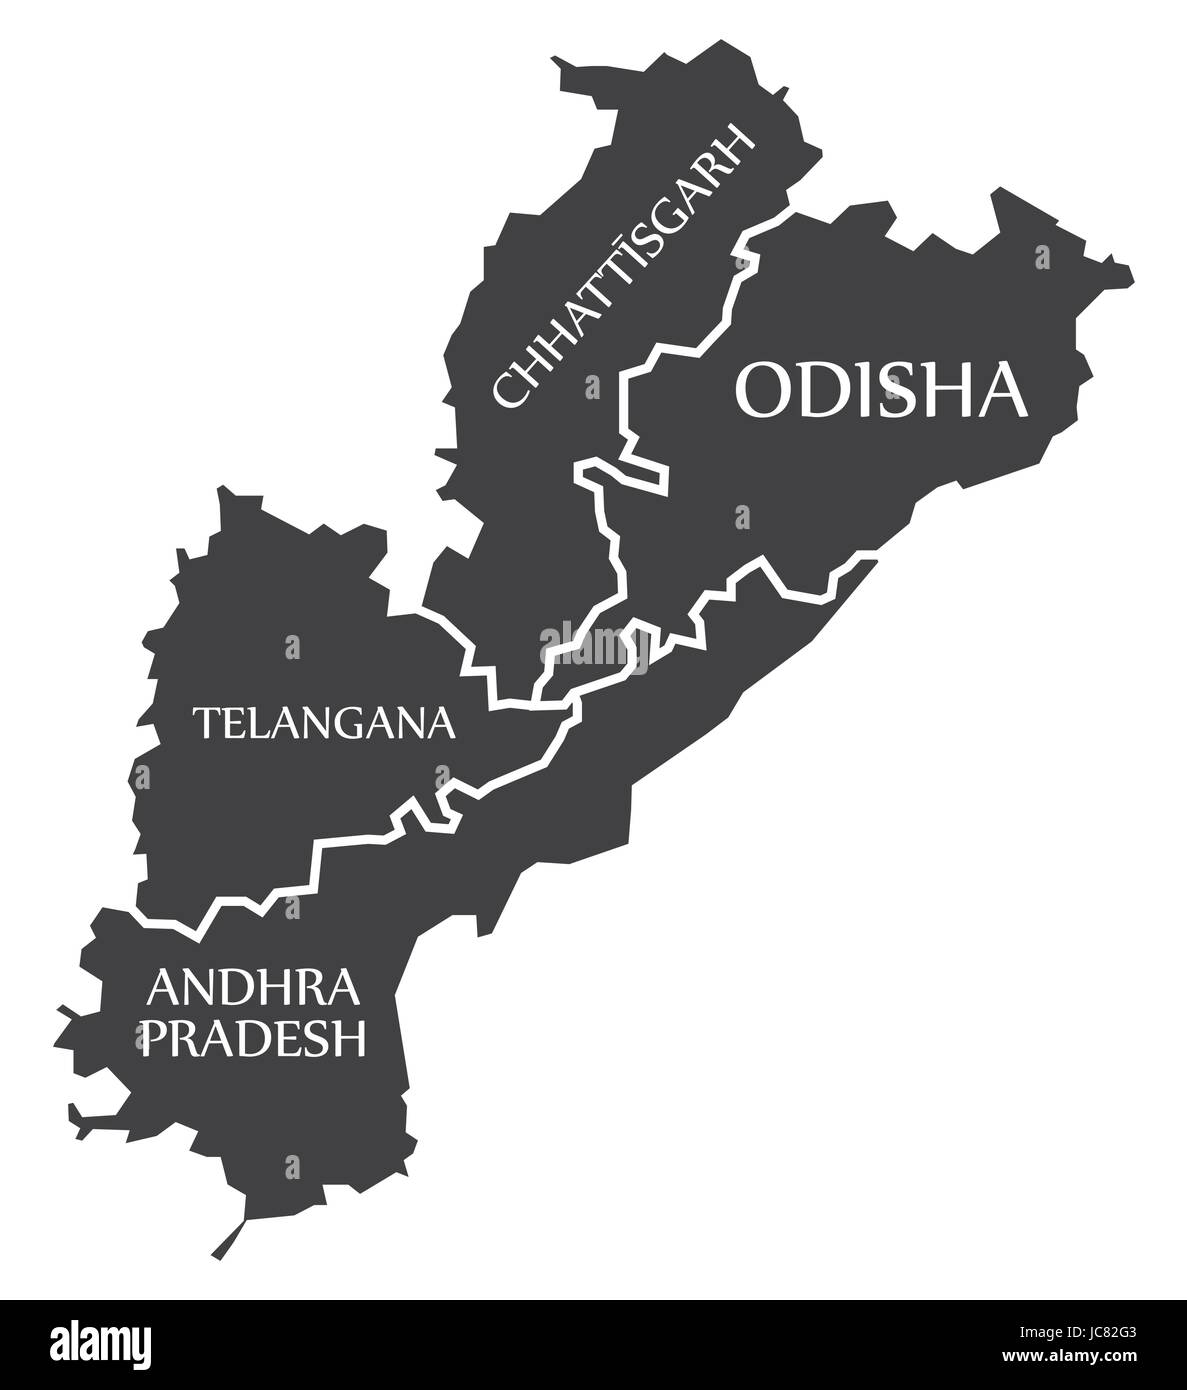 L'Andhra Pradesh - Telangana - Chhattisgarh - Carte d'Odisha Illustration d'états indiens Illustration de Vecteur